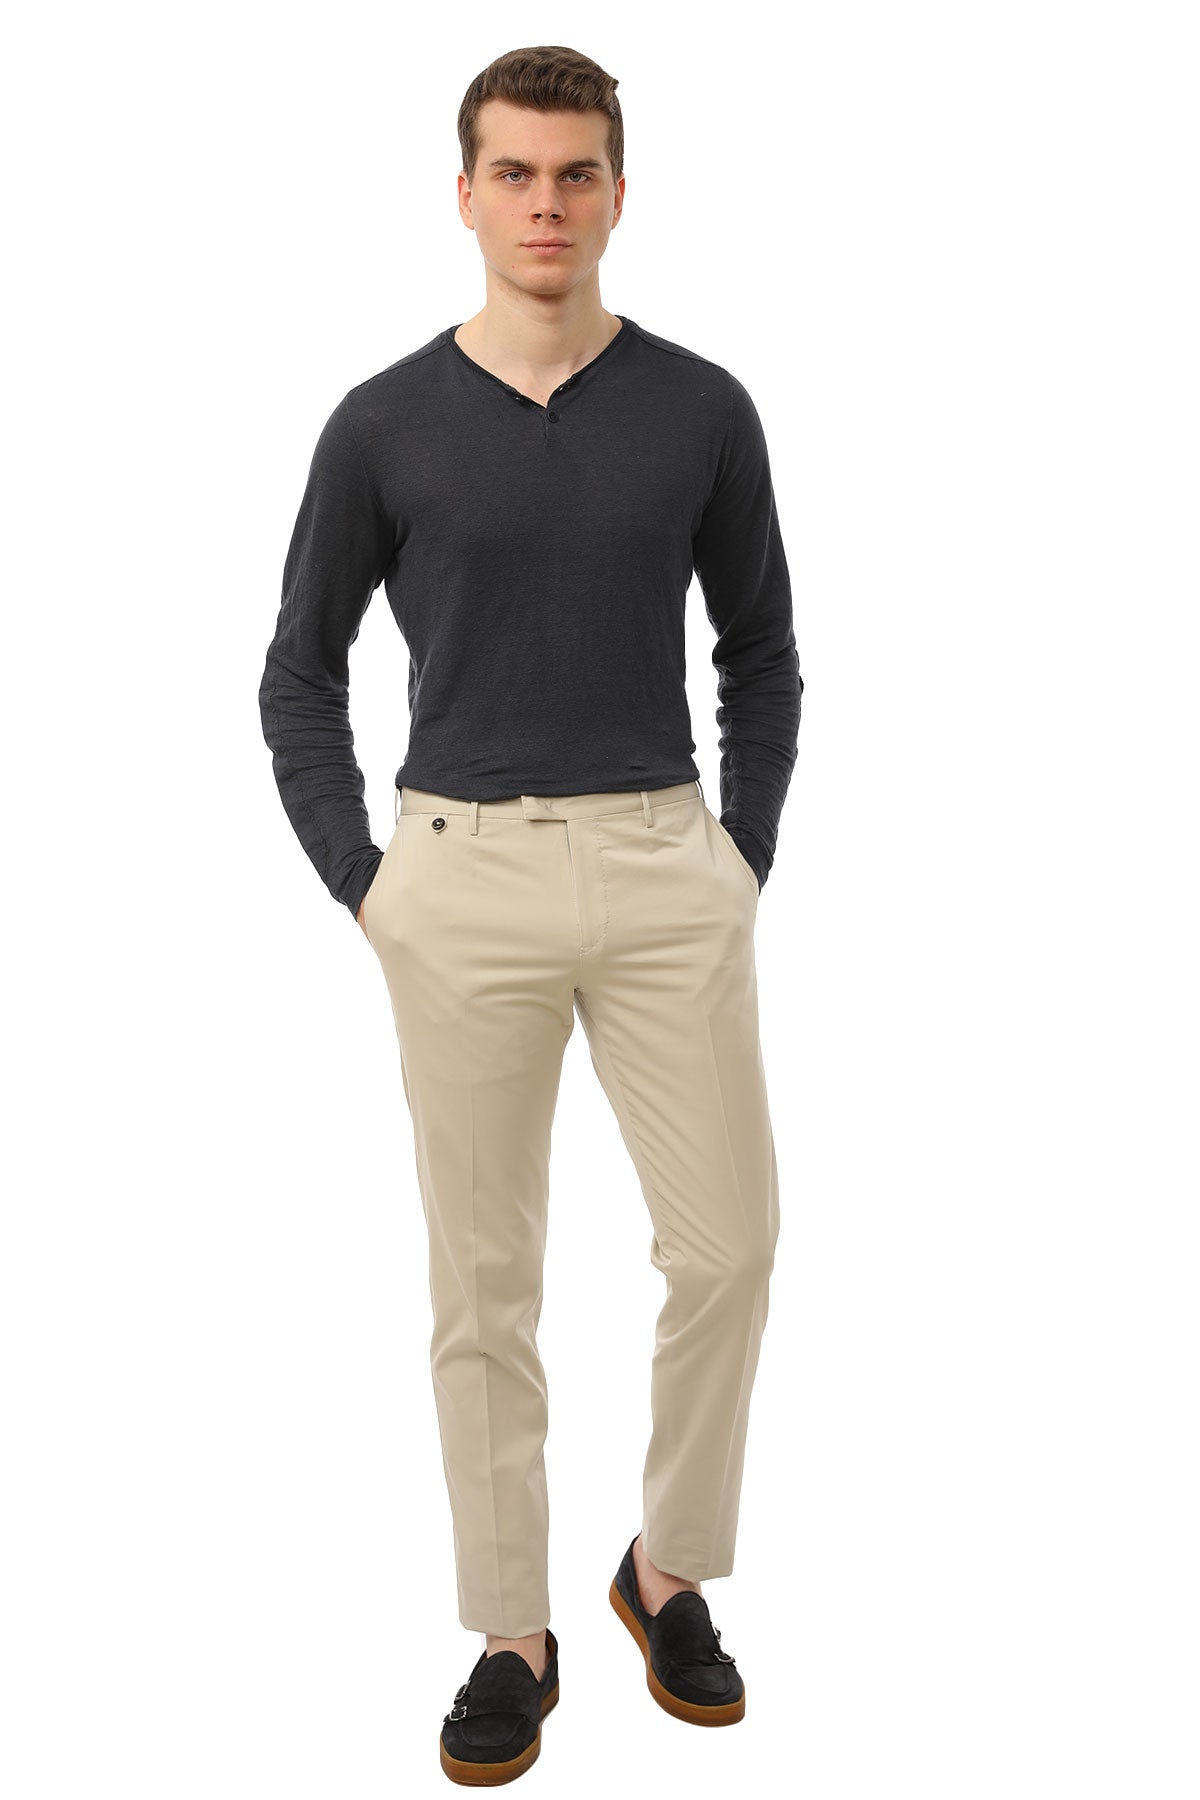 Pantaloni Torino Clear Fit Pantolon-Libas Trendy Fashion Store